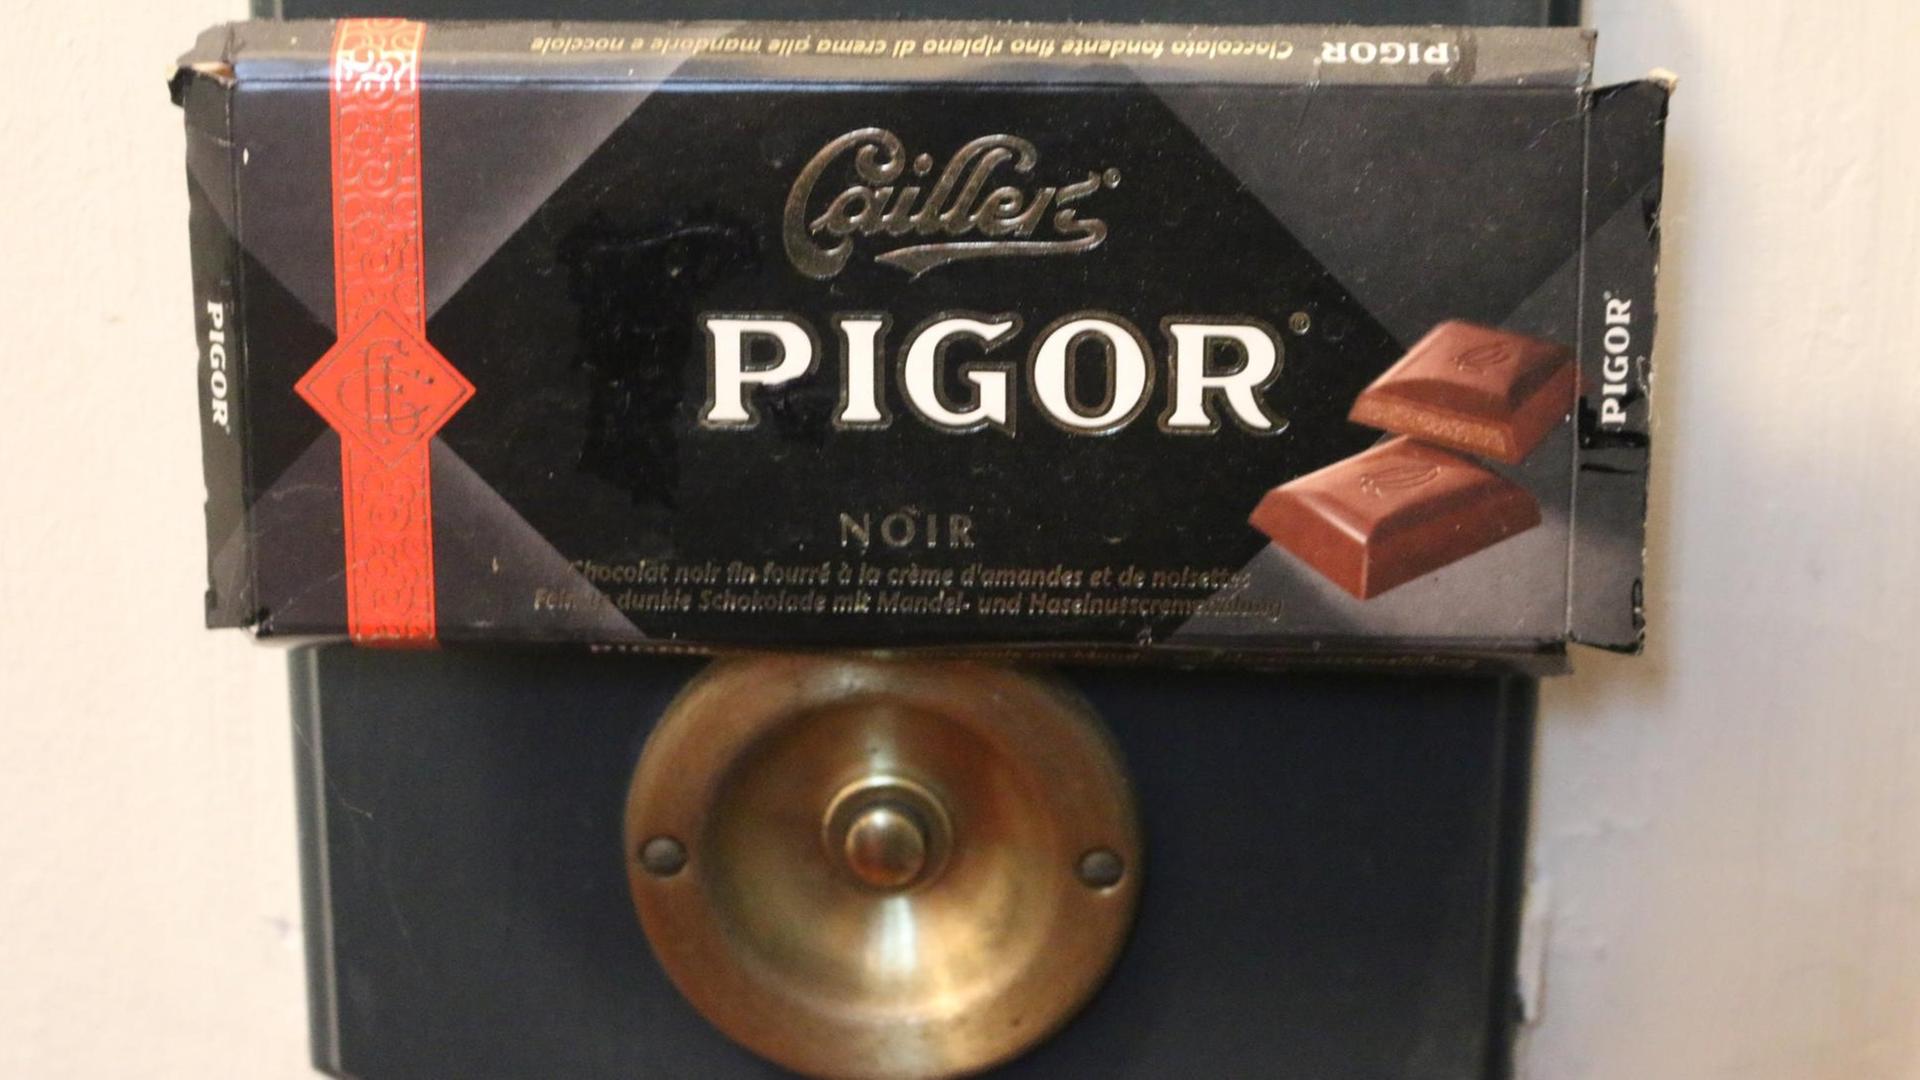 Ein Klingelschild in Form einer Schokoladentafel mit dem Namen Pigor